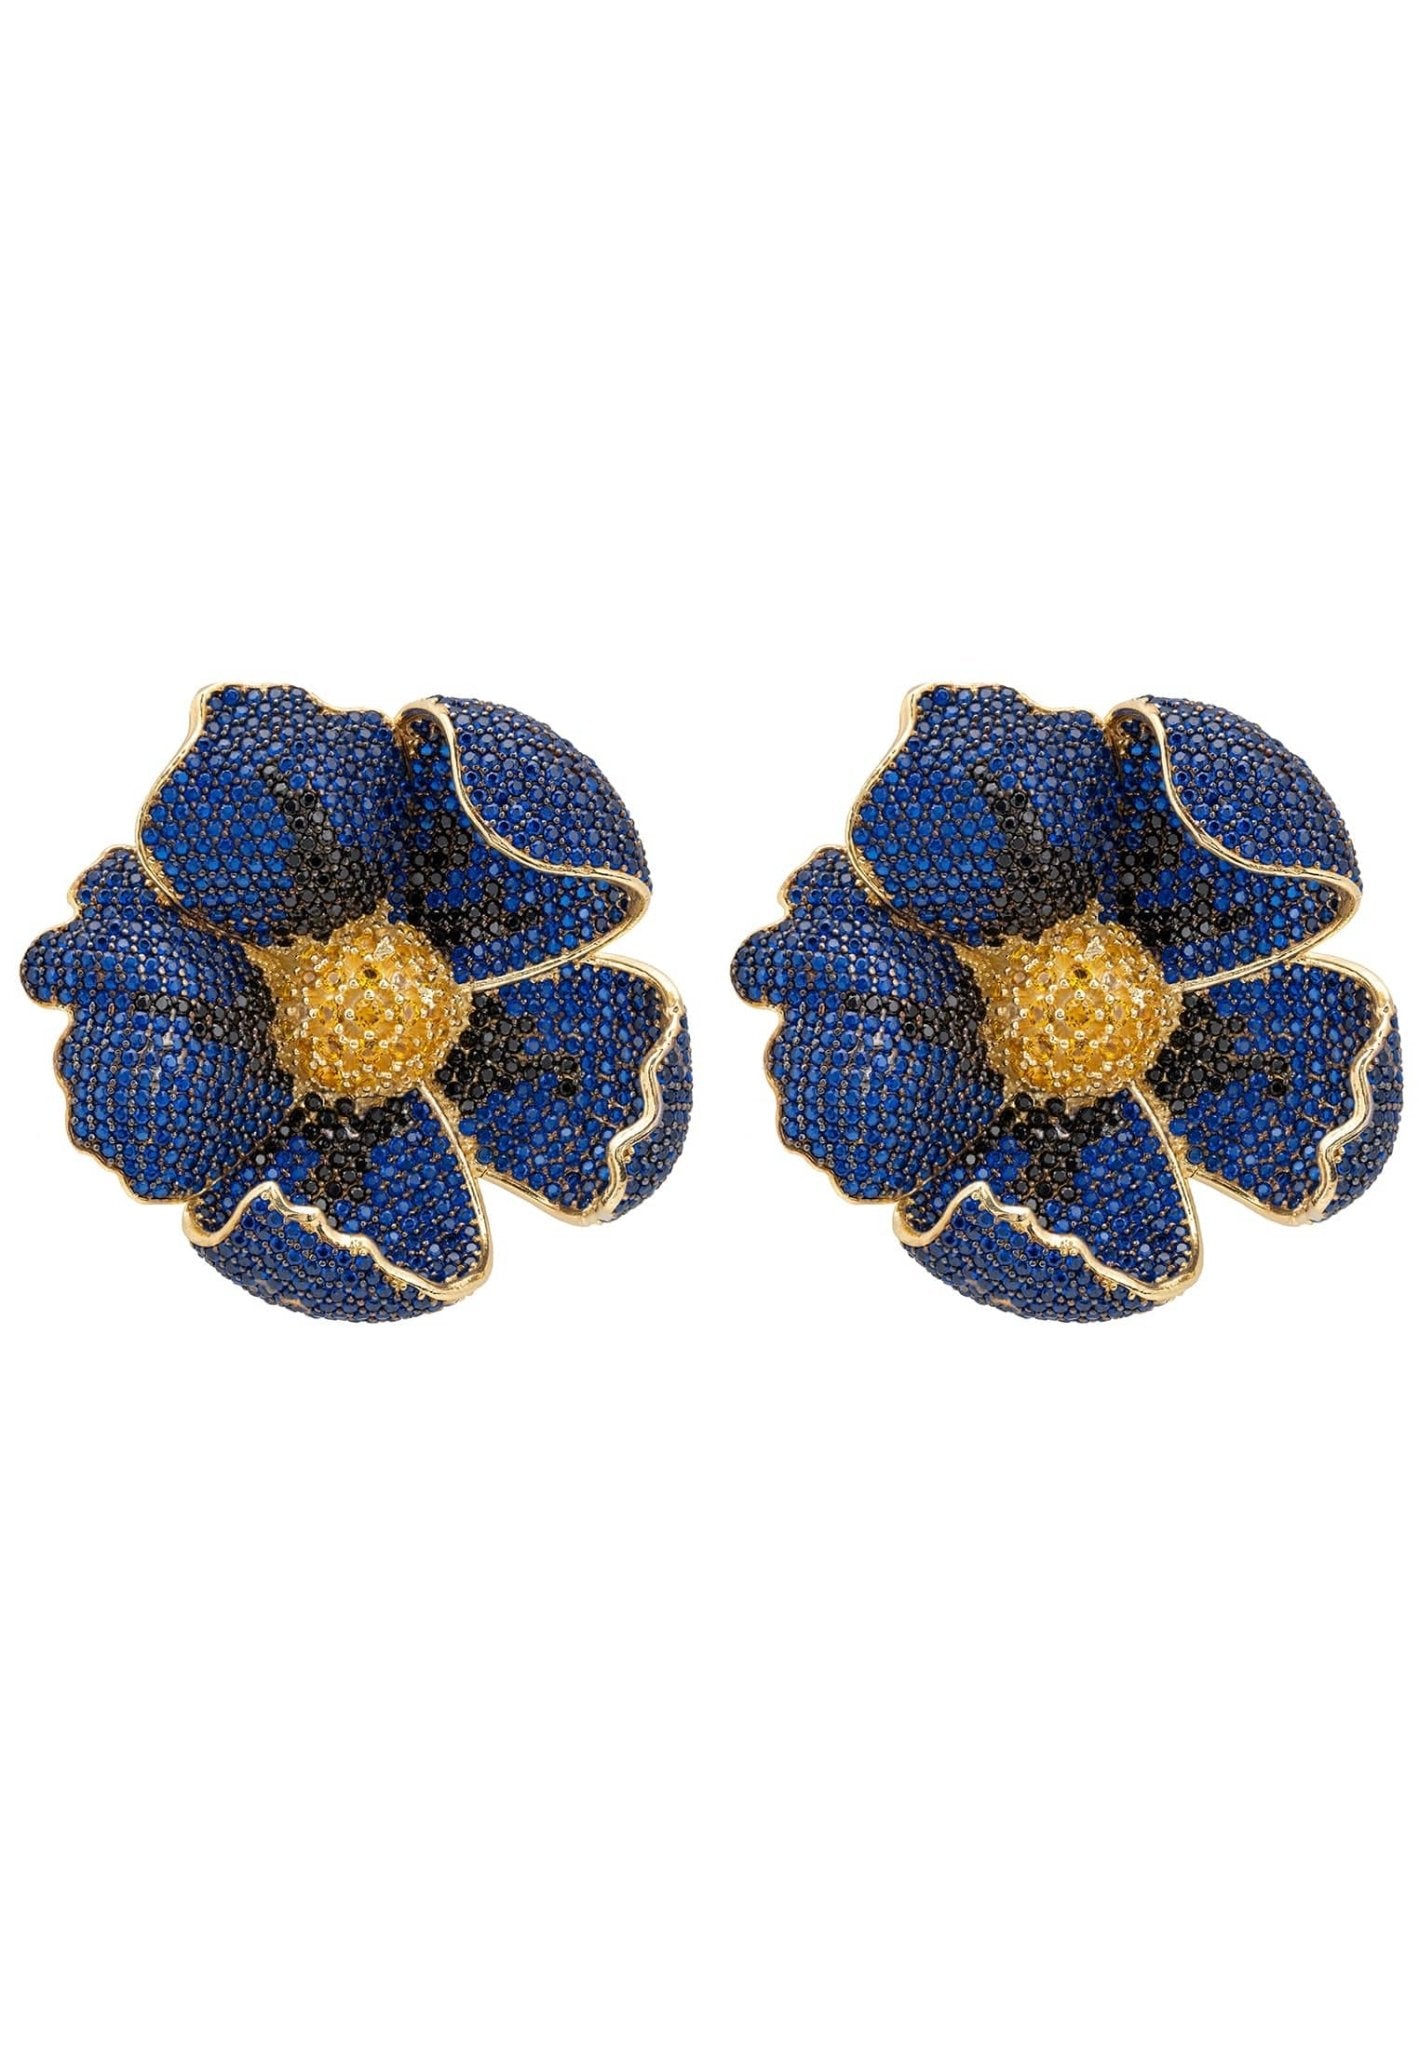 Poppy Sapphire Blue Earrings Gold - LATELITA Earrings